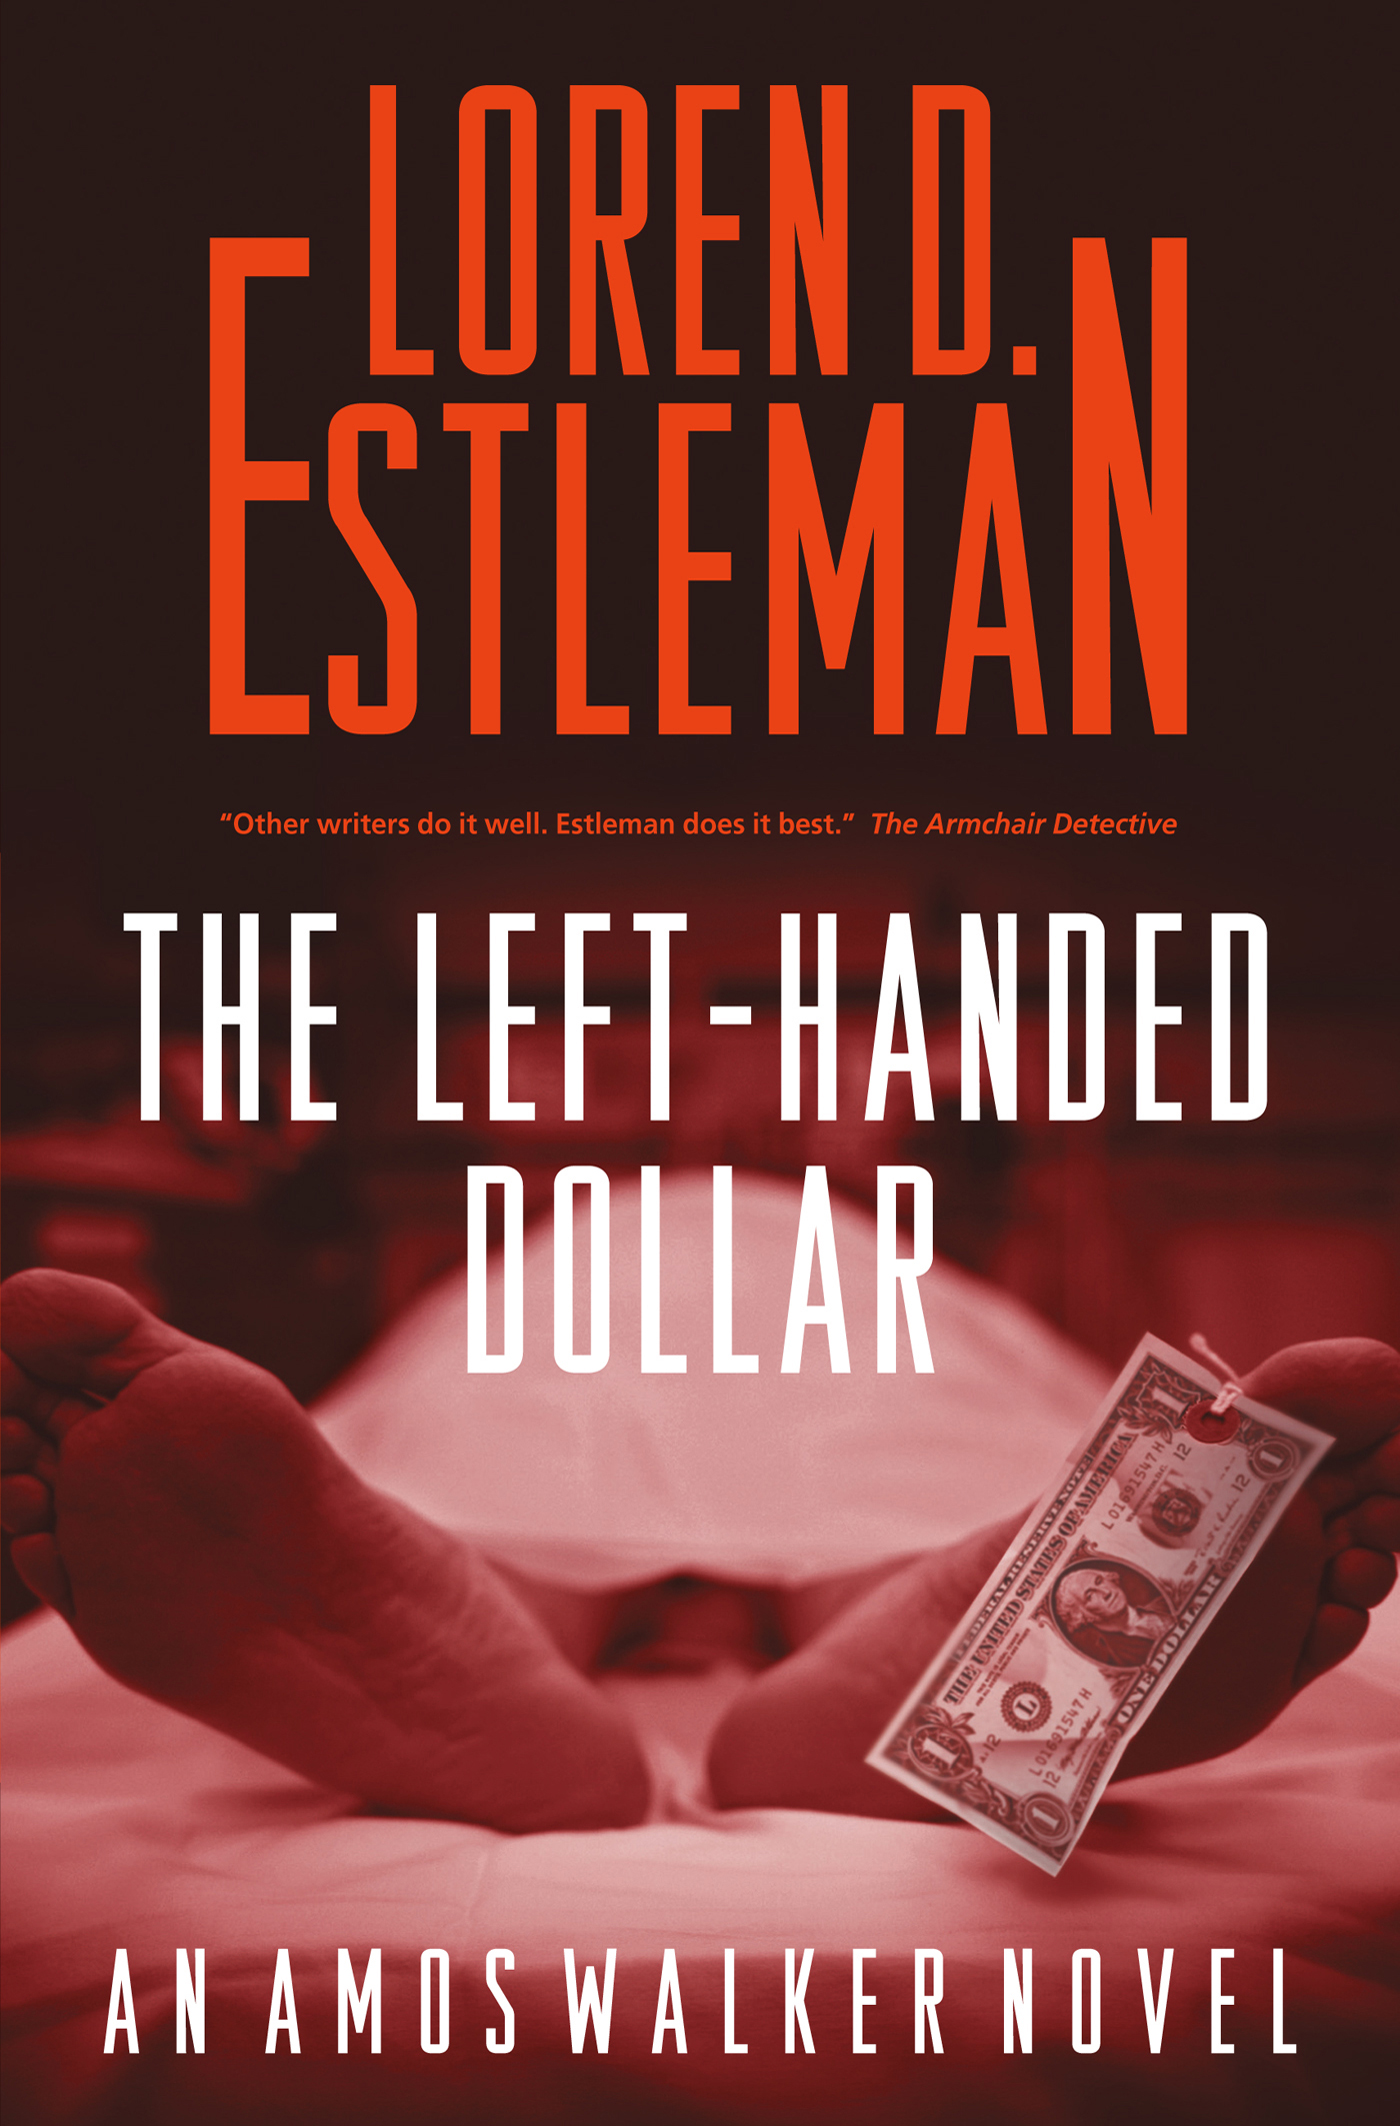 The Left-handed Dollar : An Amos Walker Novel by Loren D. Estleman